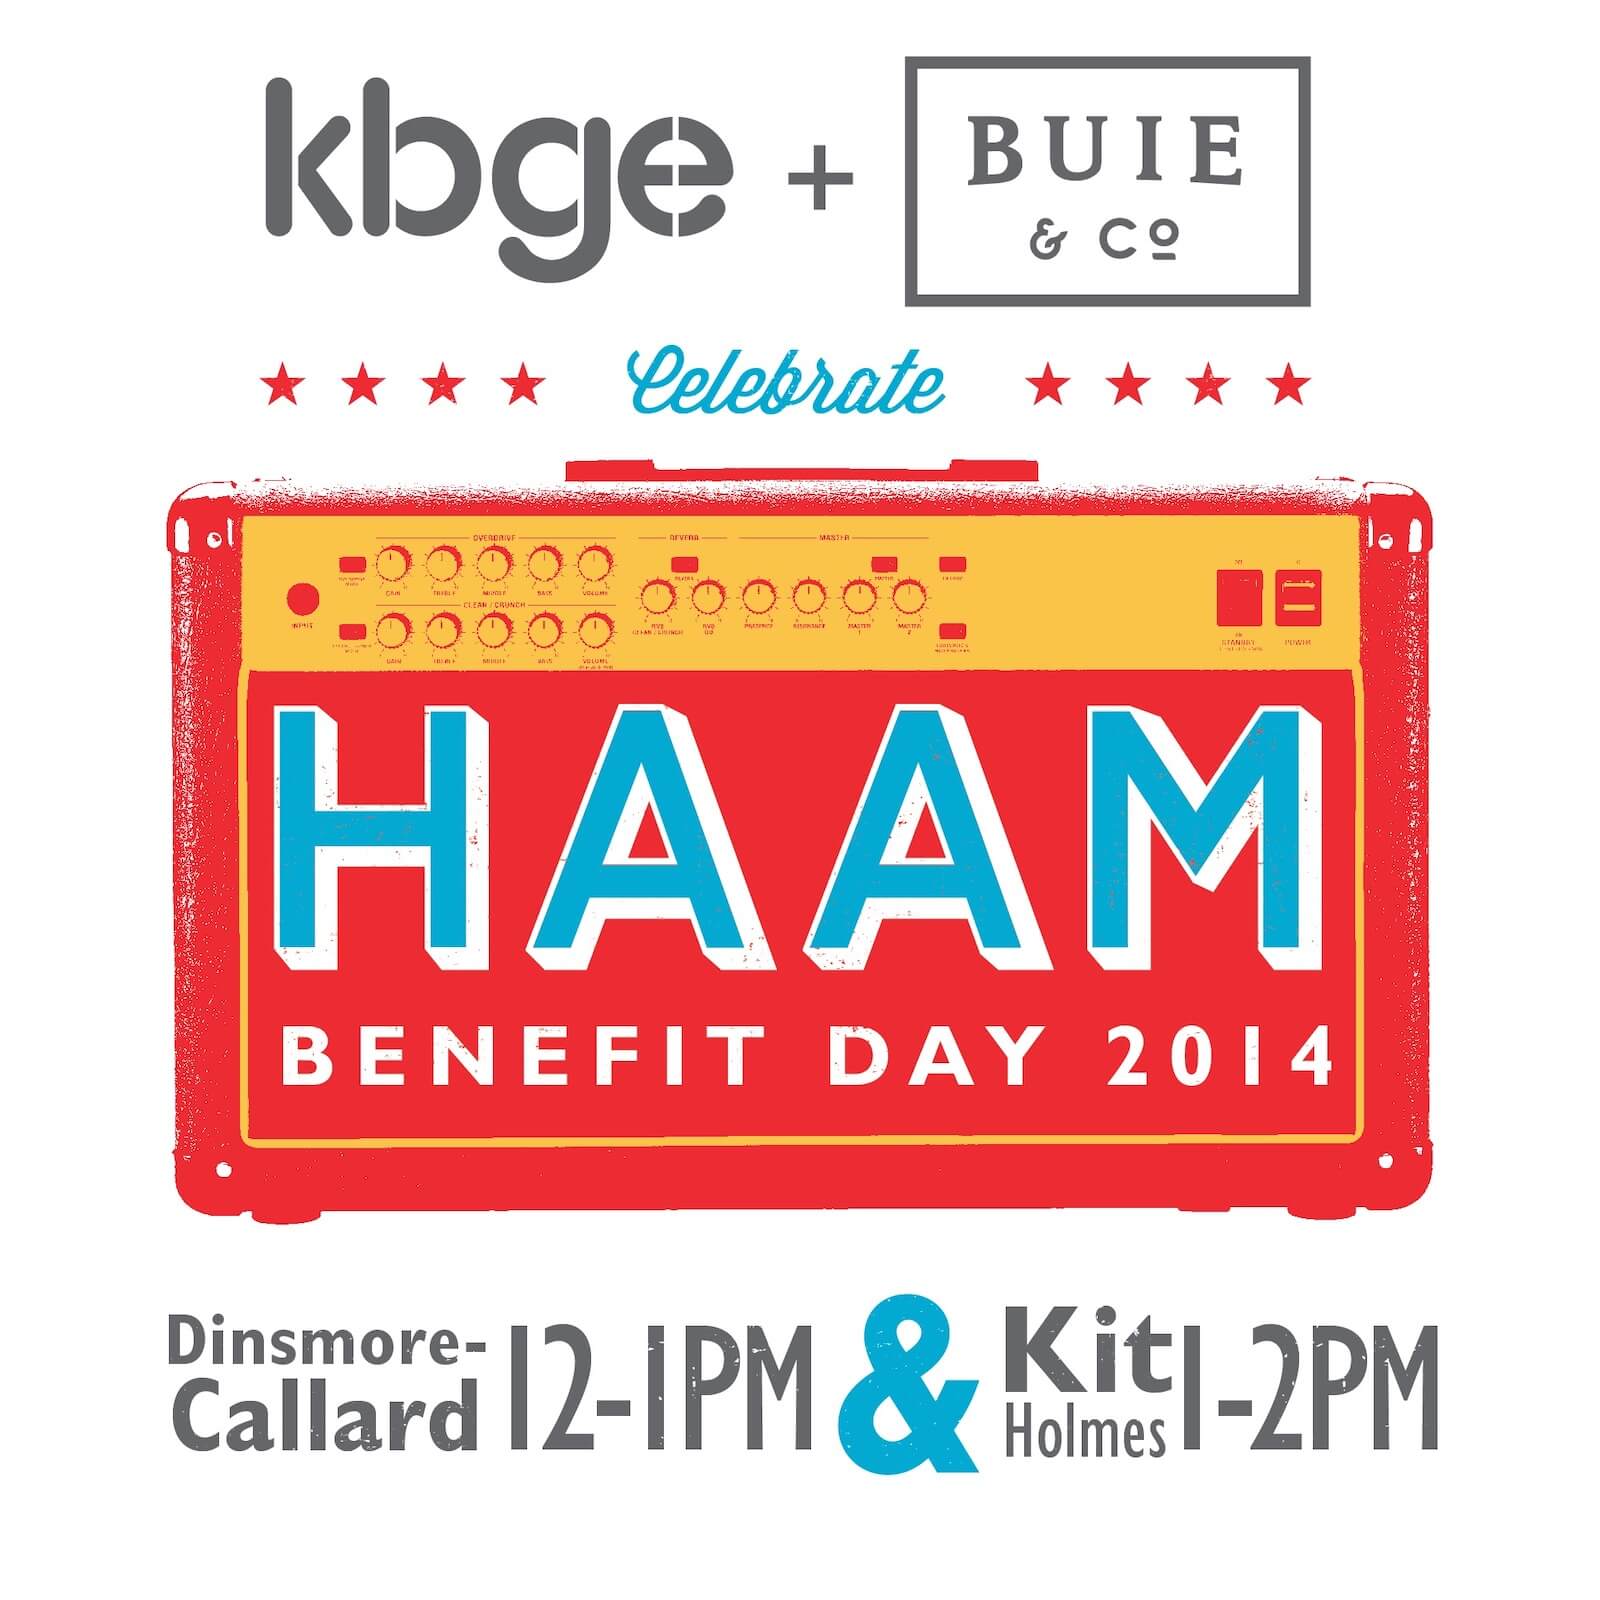 KBGE Engineering HAAM benefit concert poster design